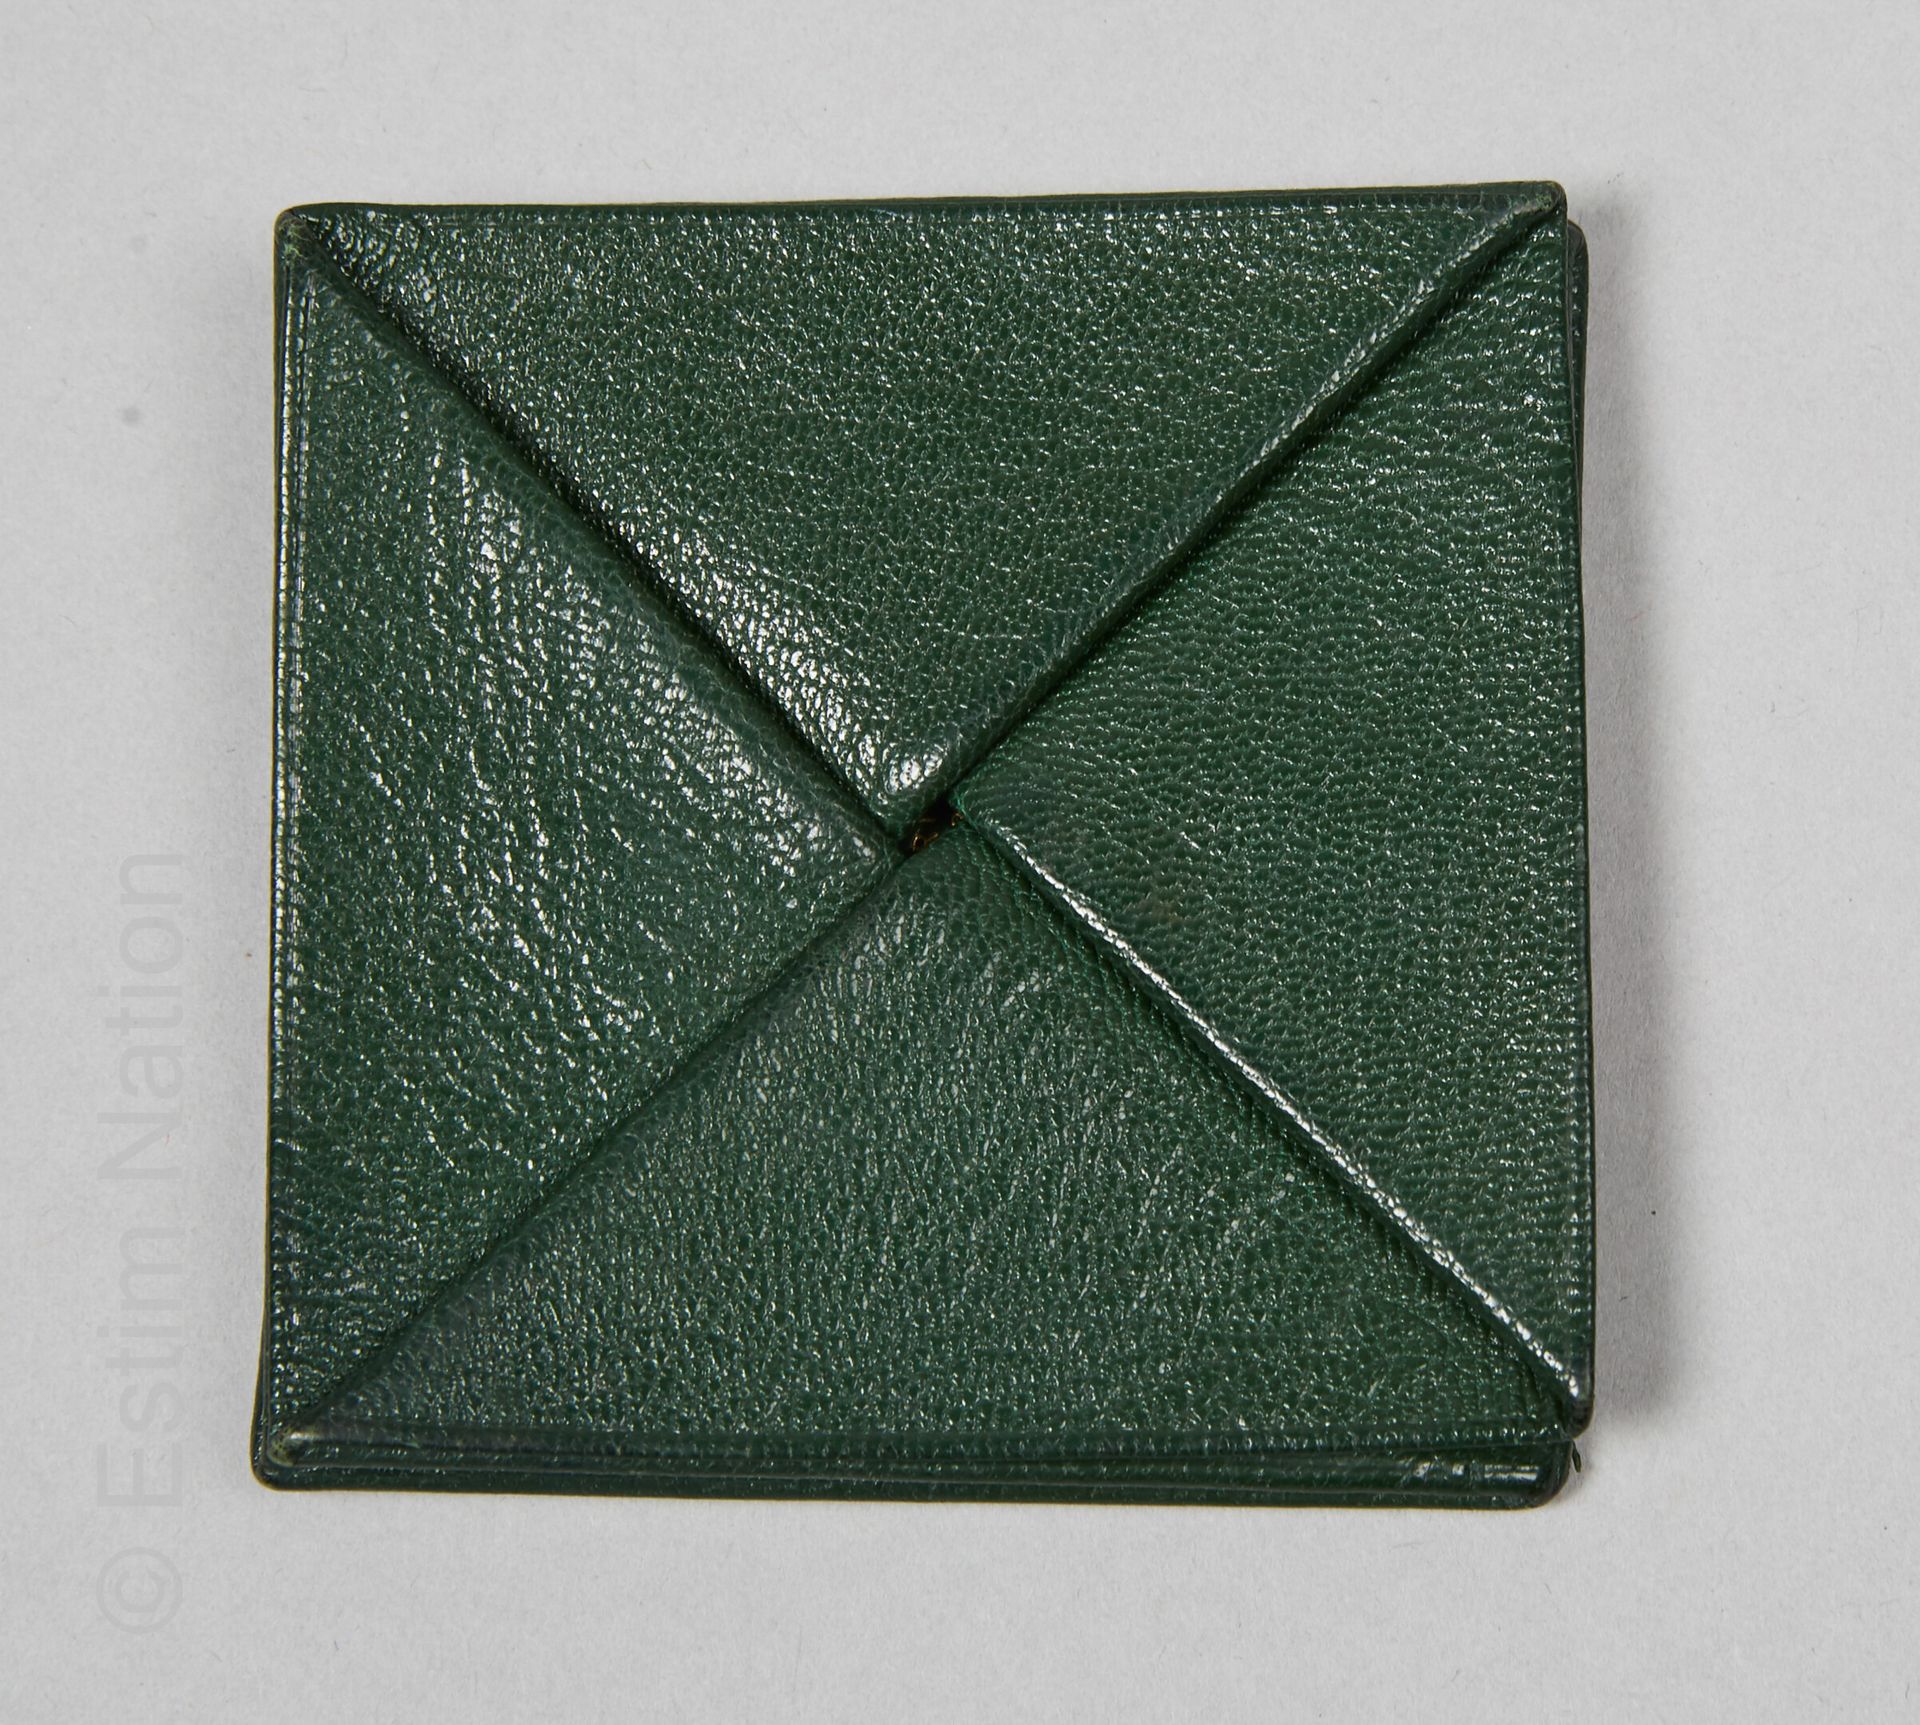 HERMES (1984) 迈索尔山羊奶瓶绿色折纸效果的钱袋 "ZOULOU"（8 x 8厘米）（使用后有小的铜锈和变形）。